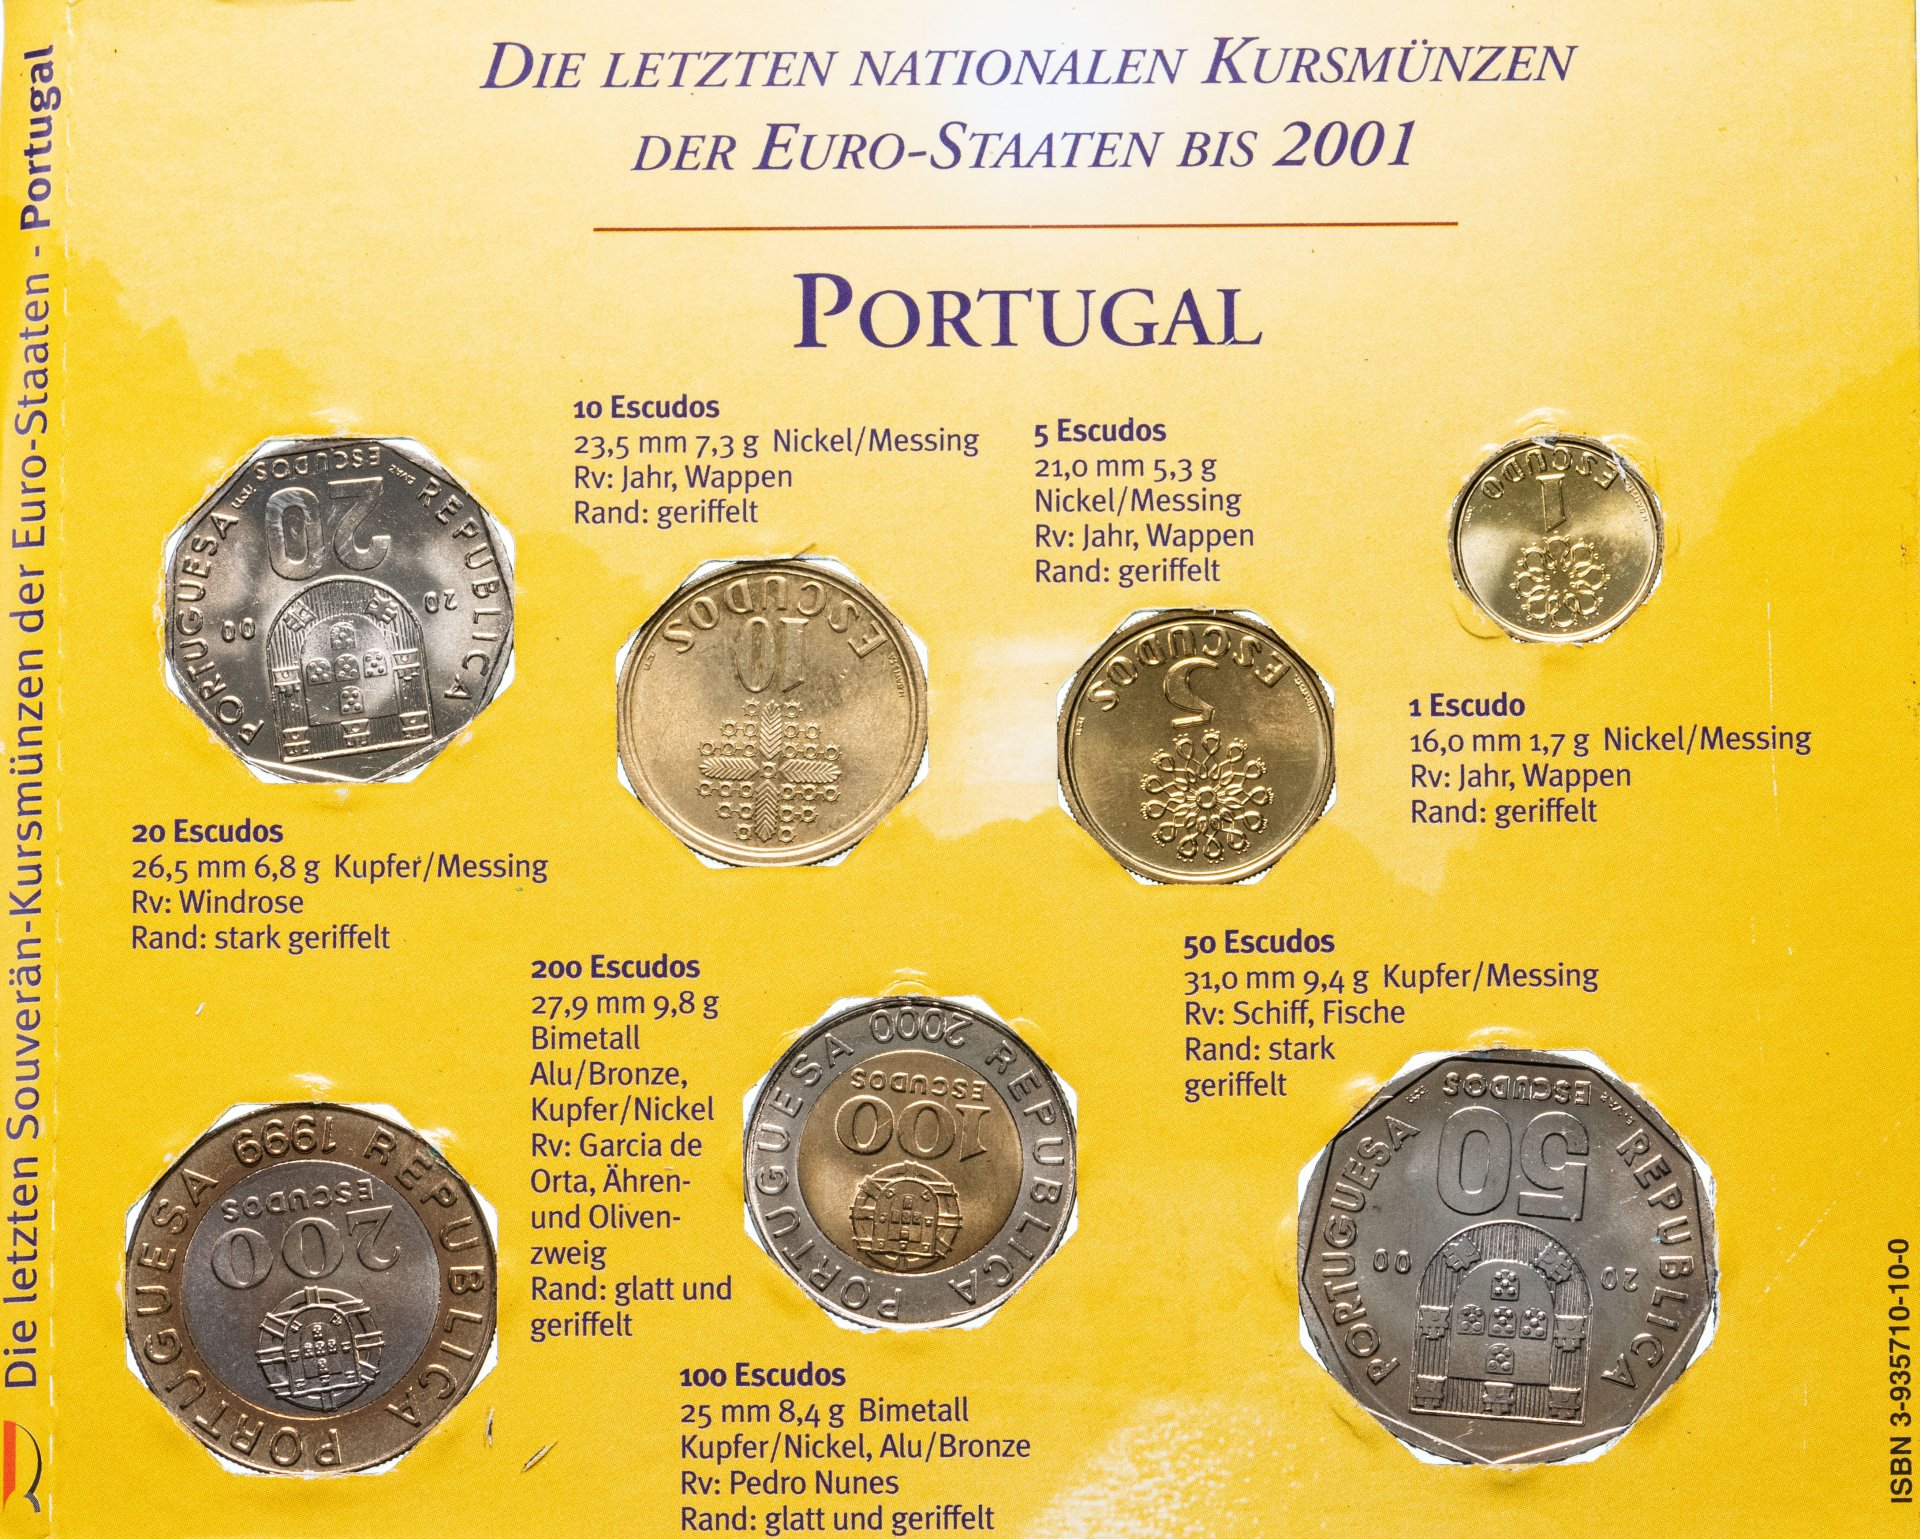 Монет 1999 года. Монета 1999 года. Монеты 2000 года. Годы монет рубли. Набор монет железнодорожника 5 рублей.